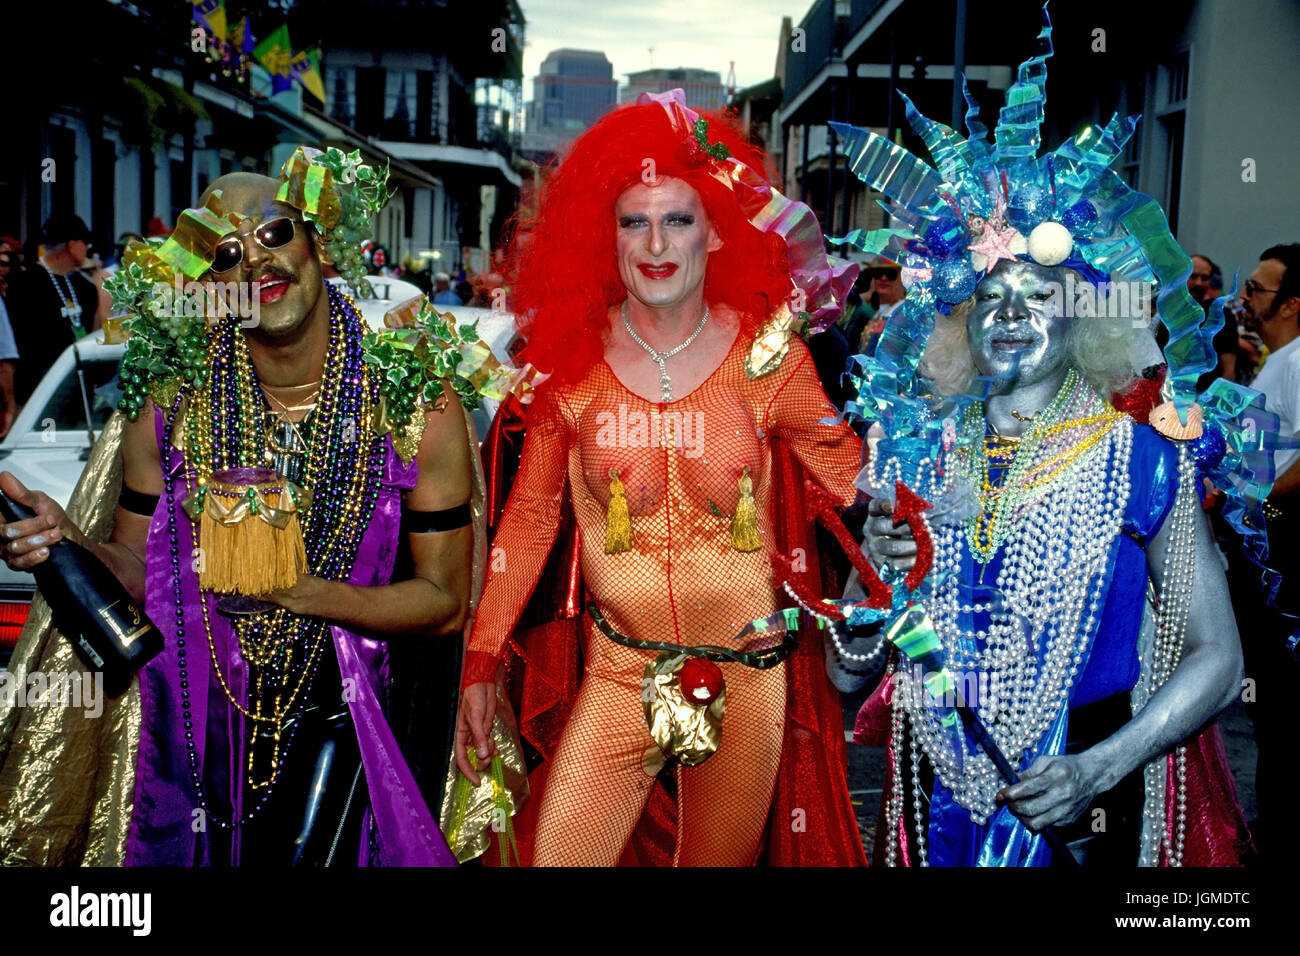 New Orleans - Mardi grass, New Orleans - Mardi Gras Stock Photo